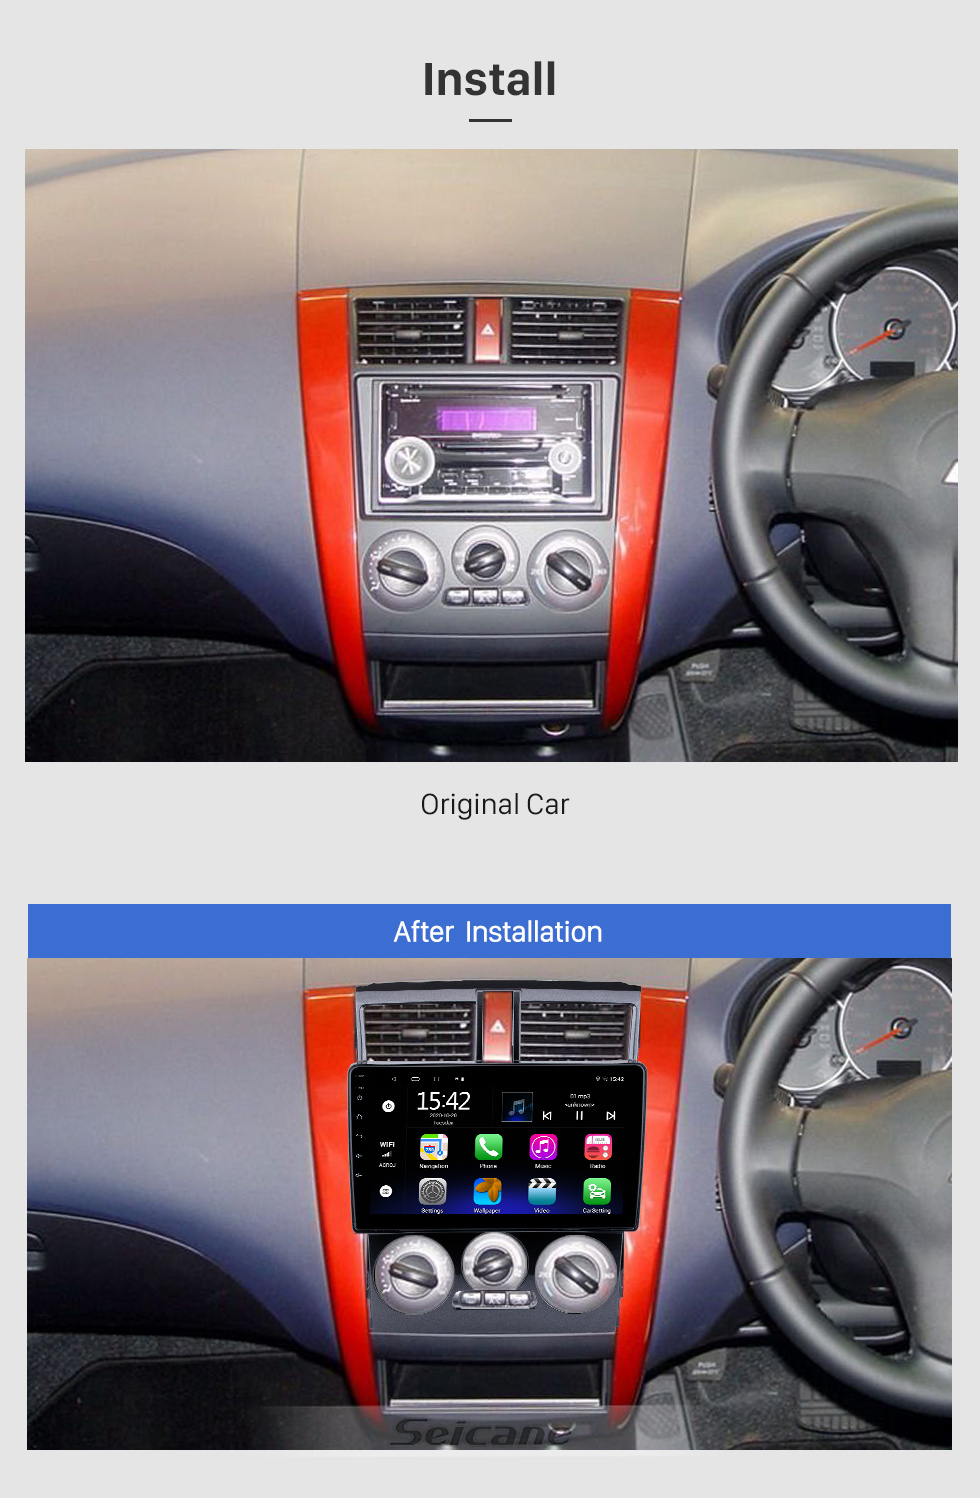 Seicane 9 Zoll Android 10.0 Für 2013 Mitsubishi COLT Plus Radio GPS-Navigationssystem Mit HD Touchscreen Bluetooth-Unterstützung Carplay OBD2